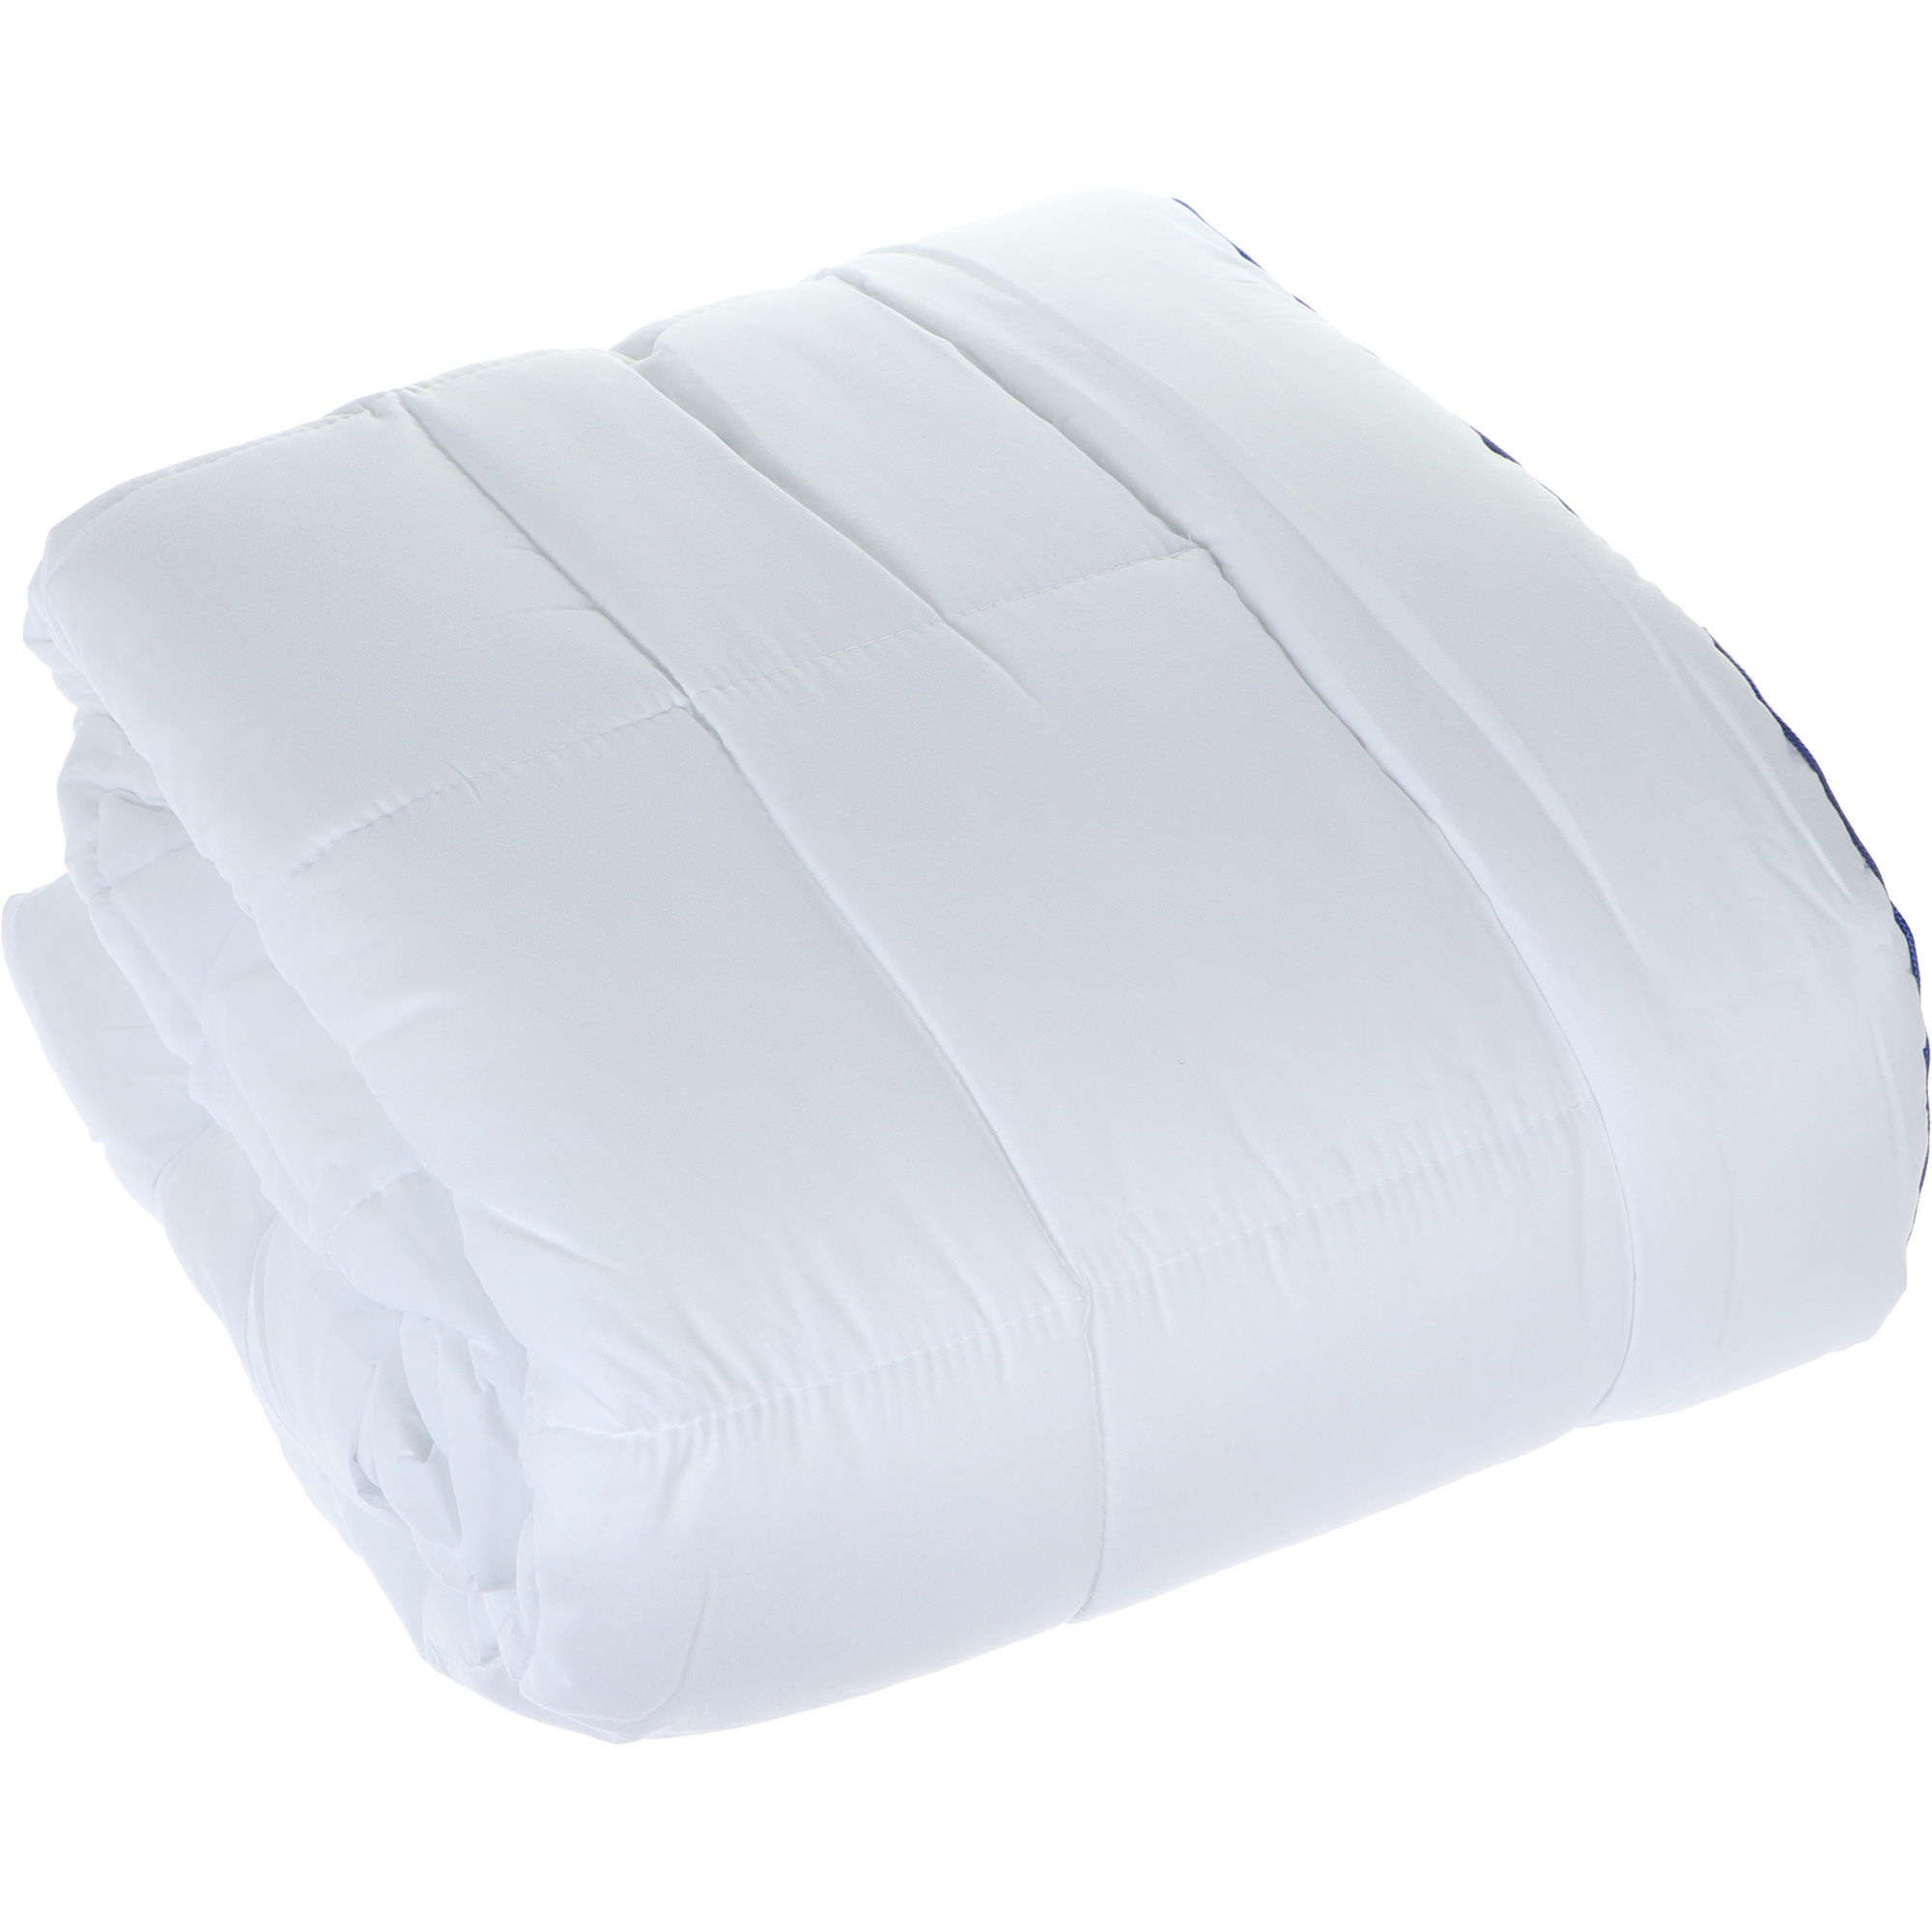 Одеяло Medsleep Swan Princess белое 200х210 см, цвет белый - фото 5